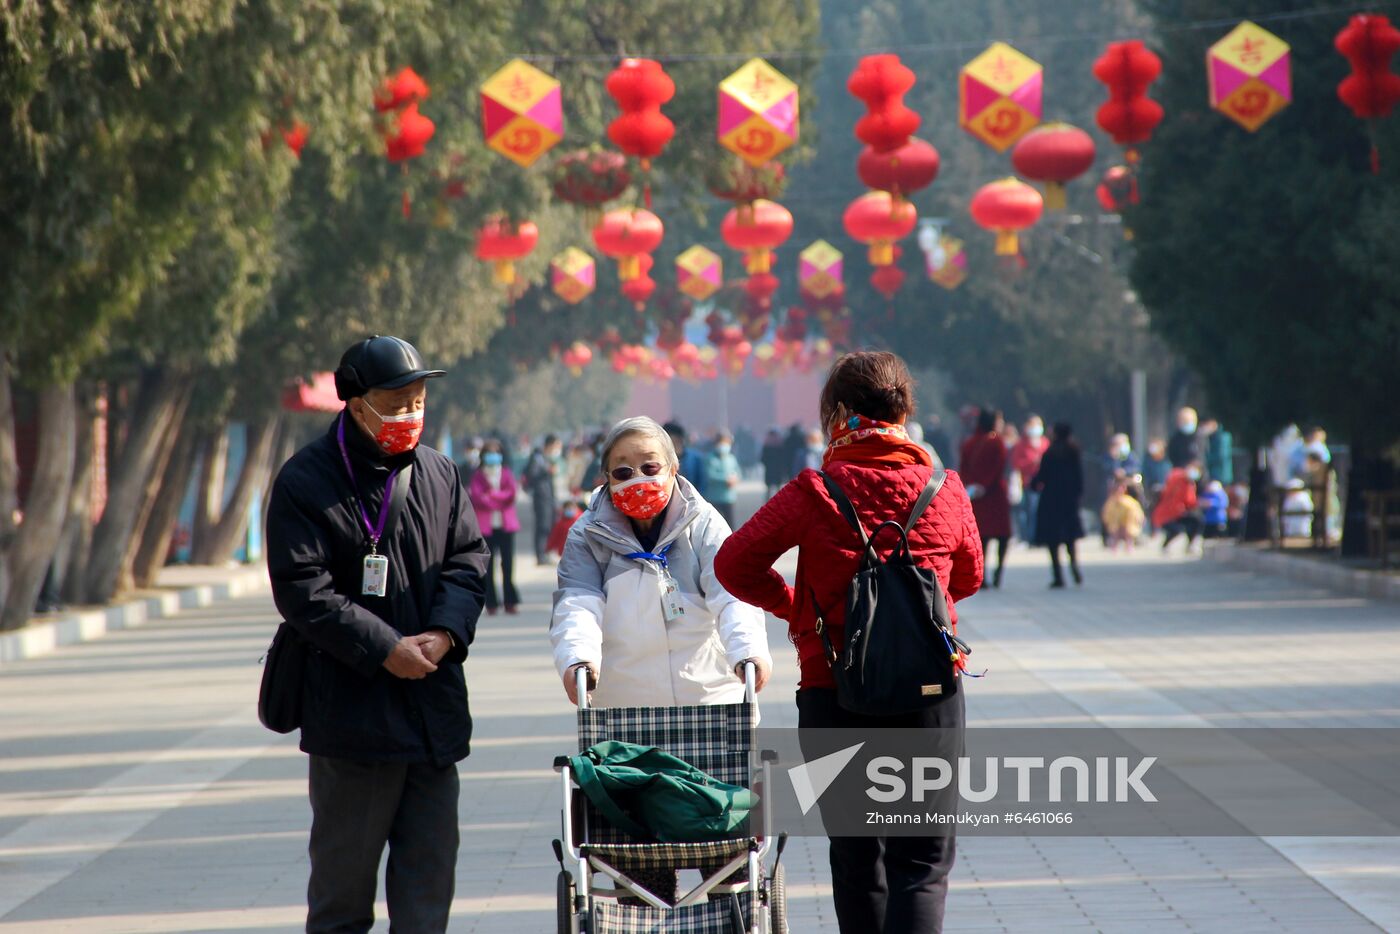 China New Year Celebration